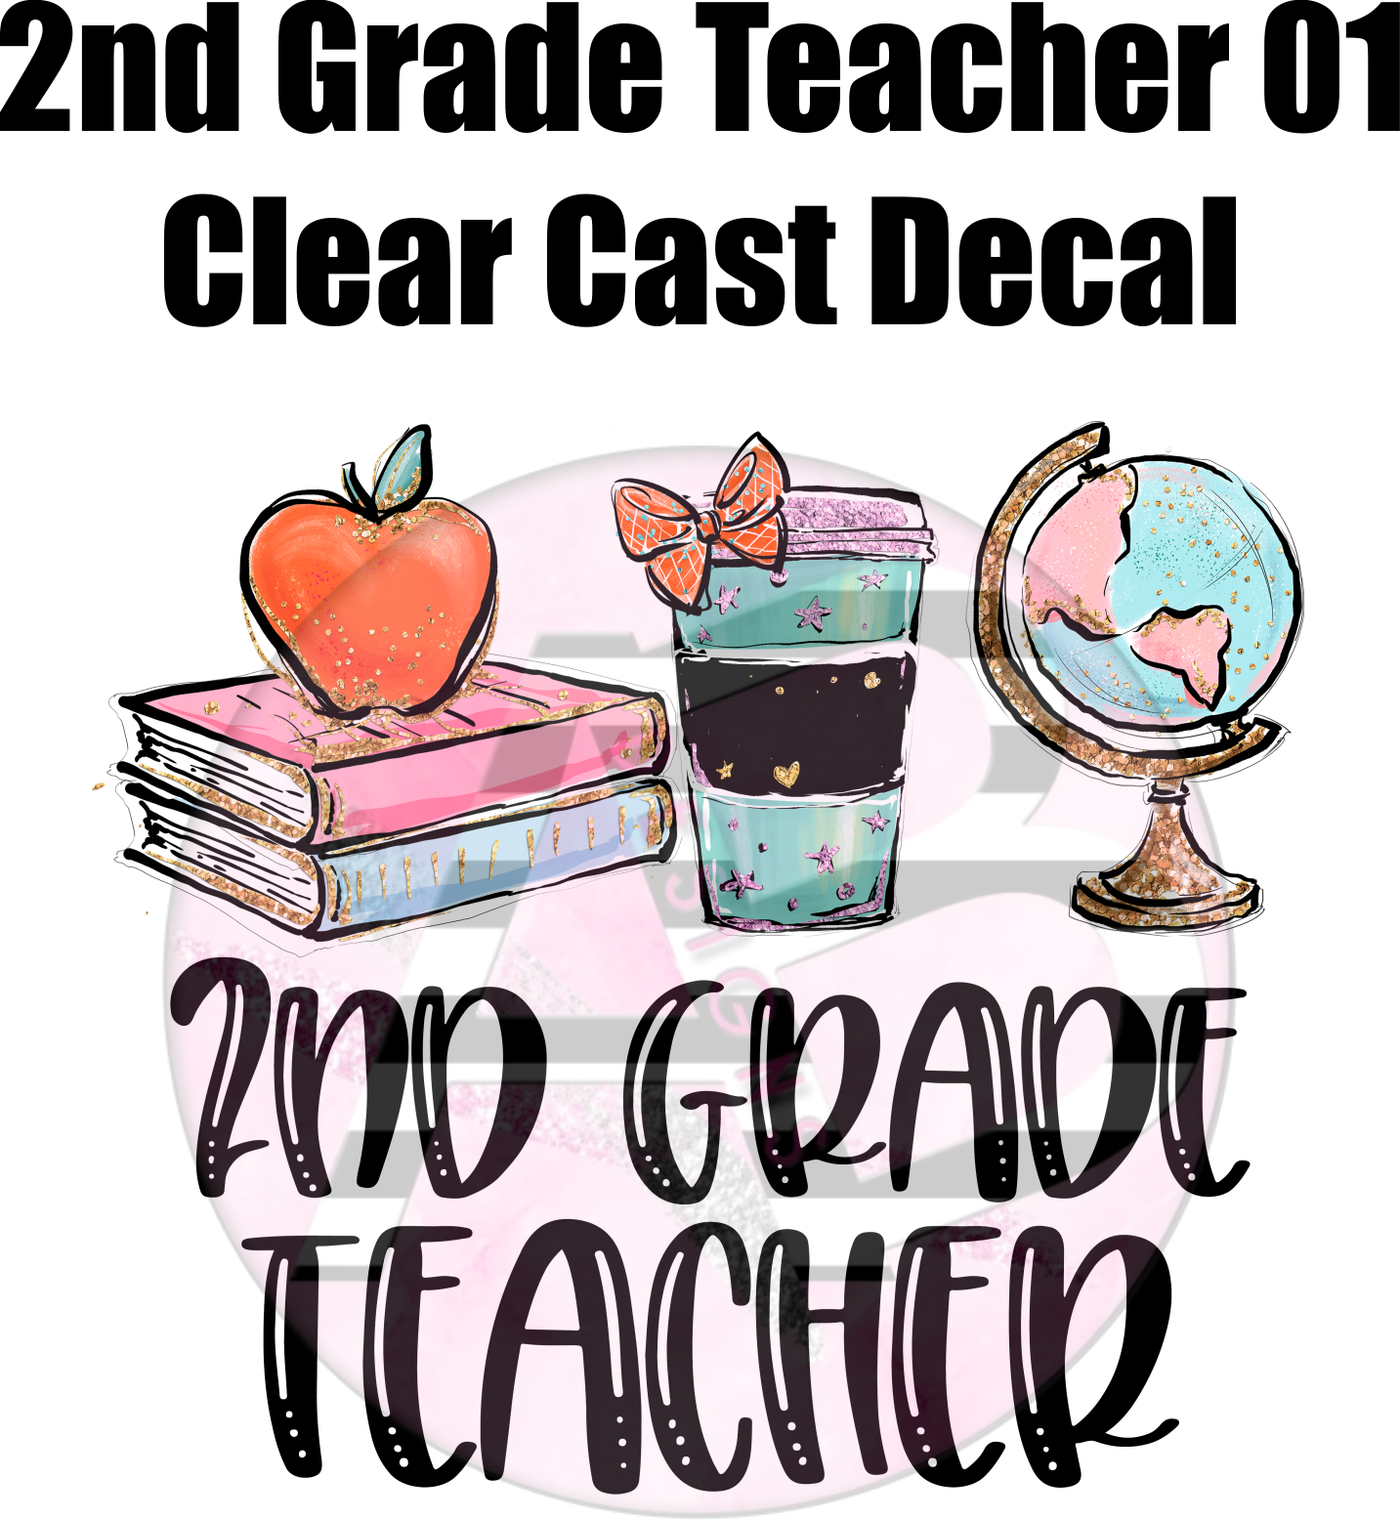 2nd Grade Teacher 01 - Clear Cast Decal